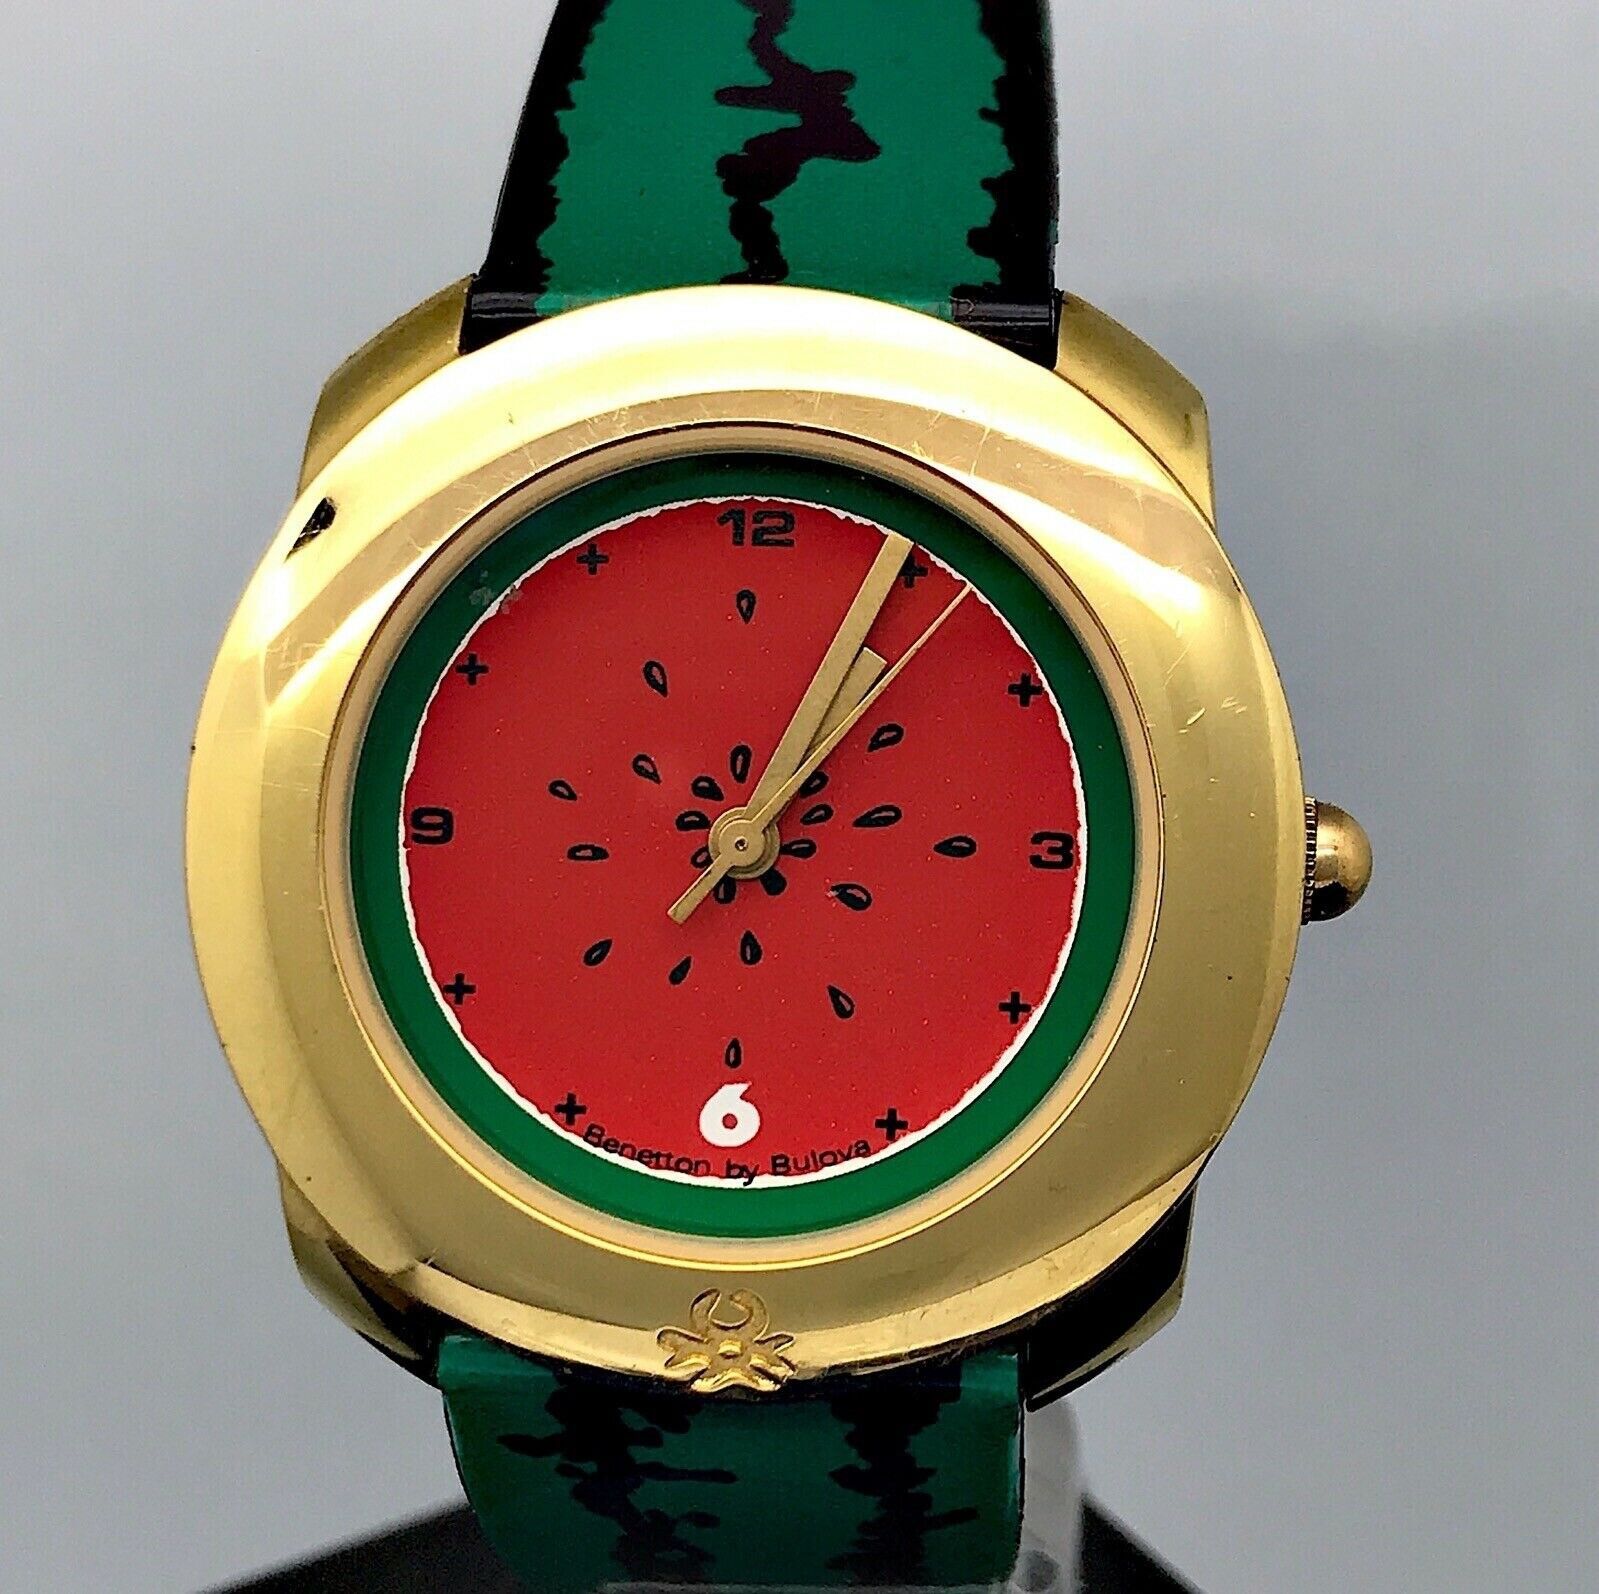 NOS Neu Benetton By Bulova 930.2320 Kal. 5621.01 Uhren Vintage Uhr 34mm MAG2